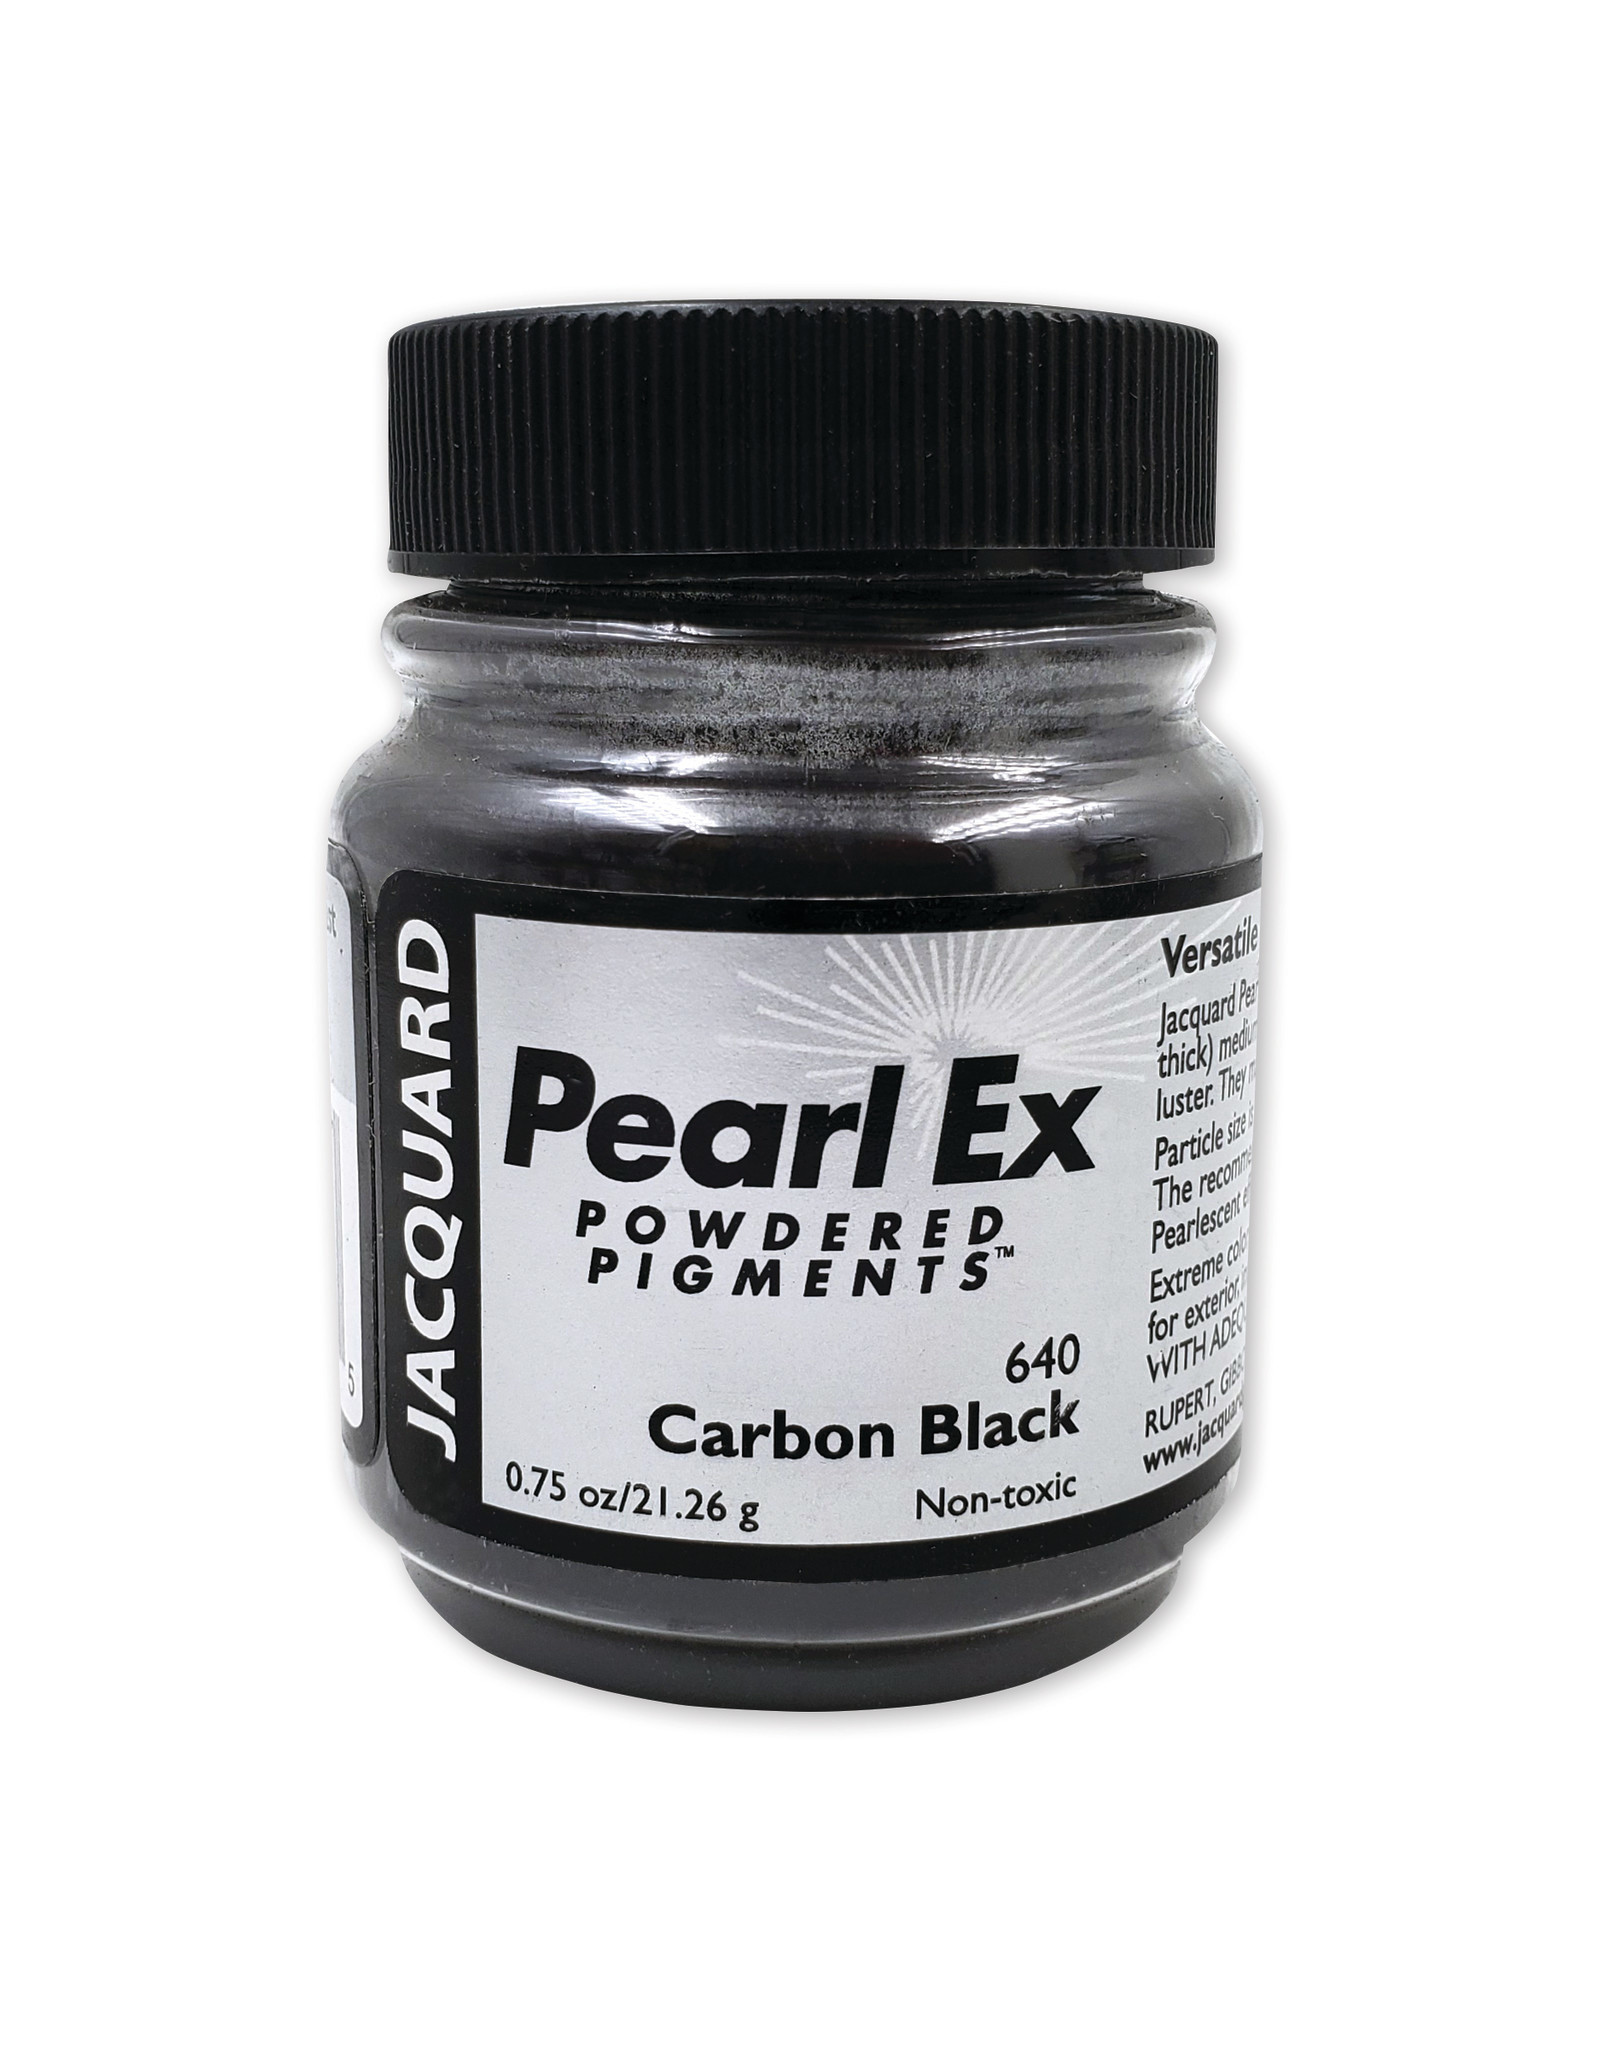 Jacquard Jacquard Pearl Ex, Carbon Black #640 3/4oz